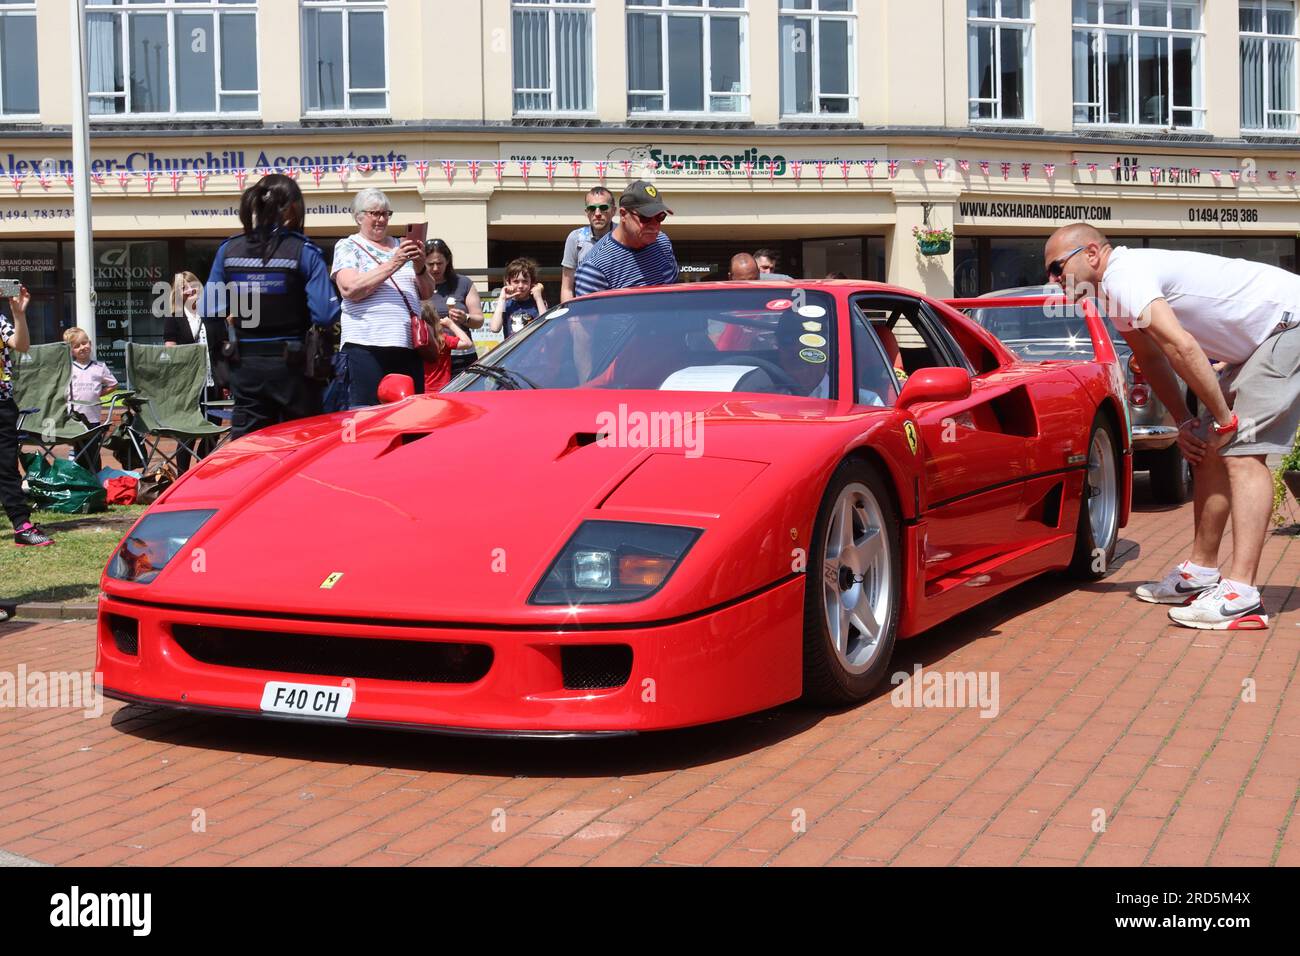 La scelta della migliore auto in mostra, una Ferrari F40 super car, realizzata per celebrare il 40° anniversario della Ferrari di costruire auto con il proprio nome, maggio 2023. Foto Stock